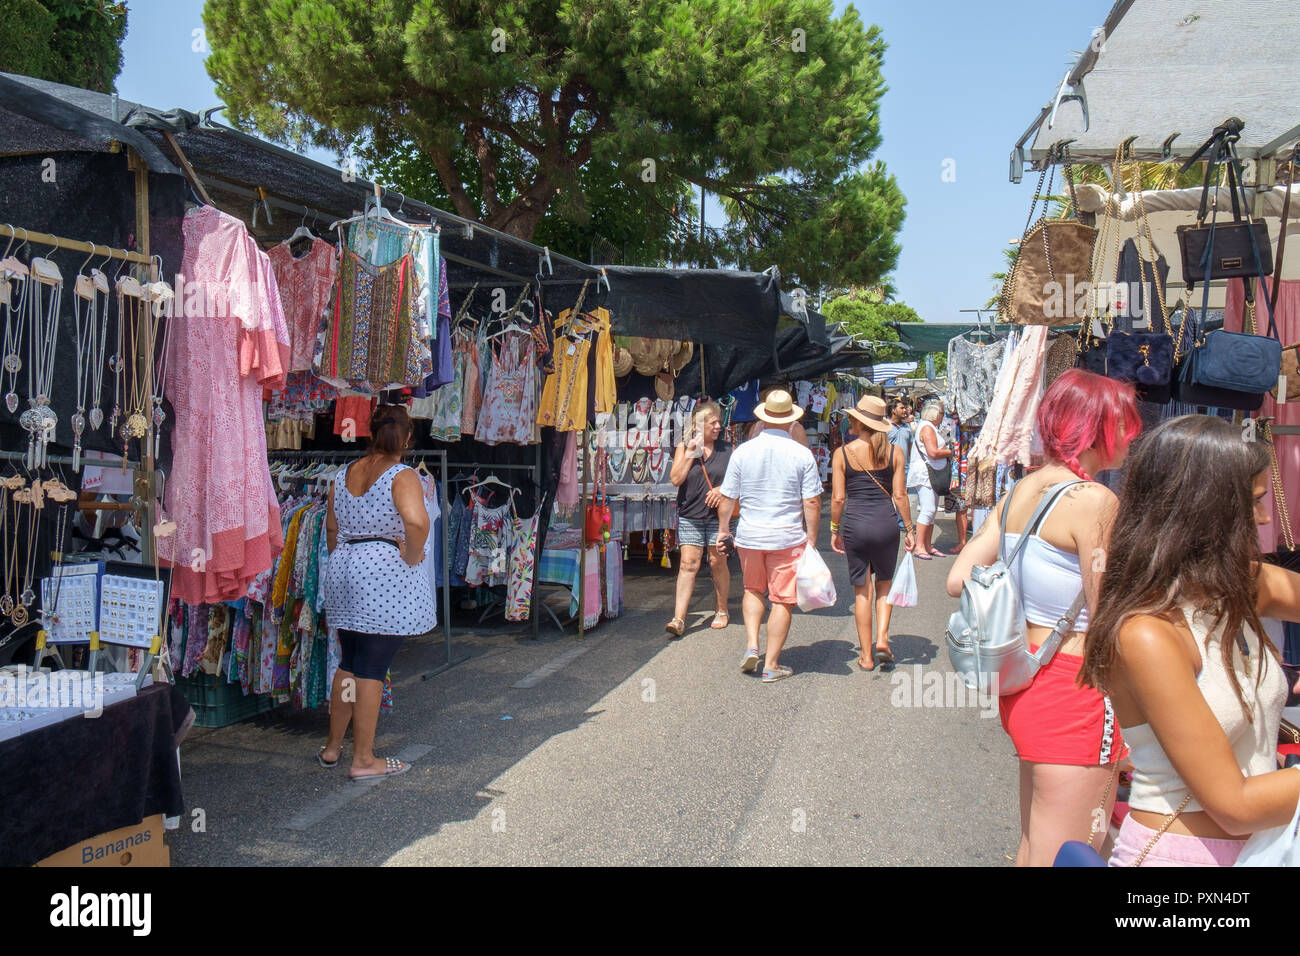 Mercadillo de Puerto Banús - weekly street markt